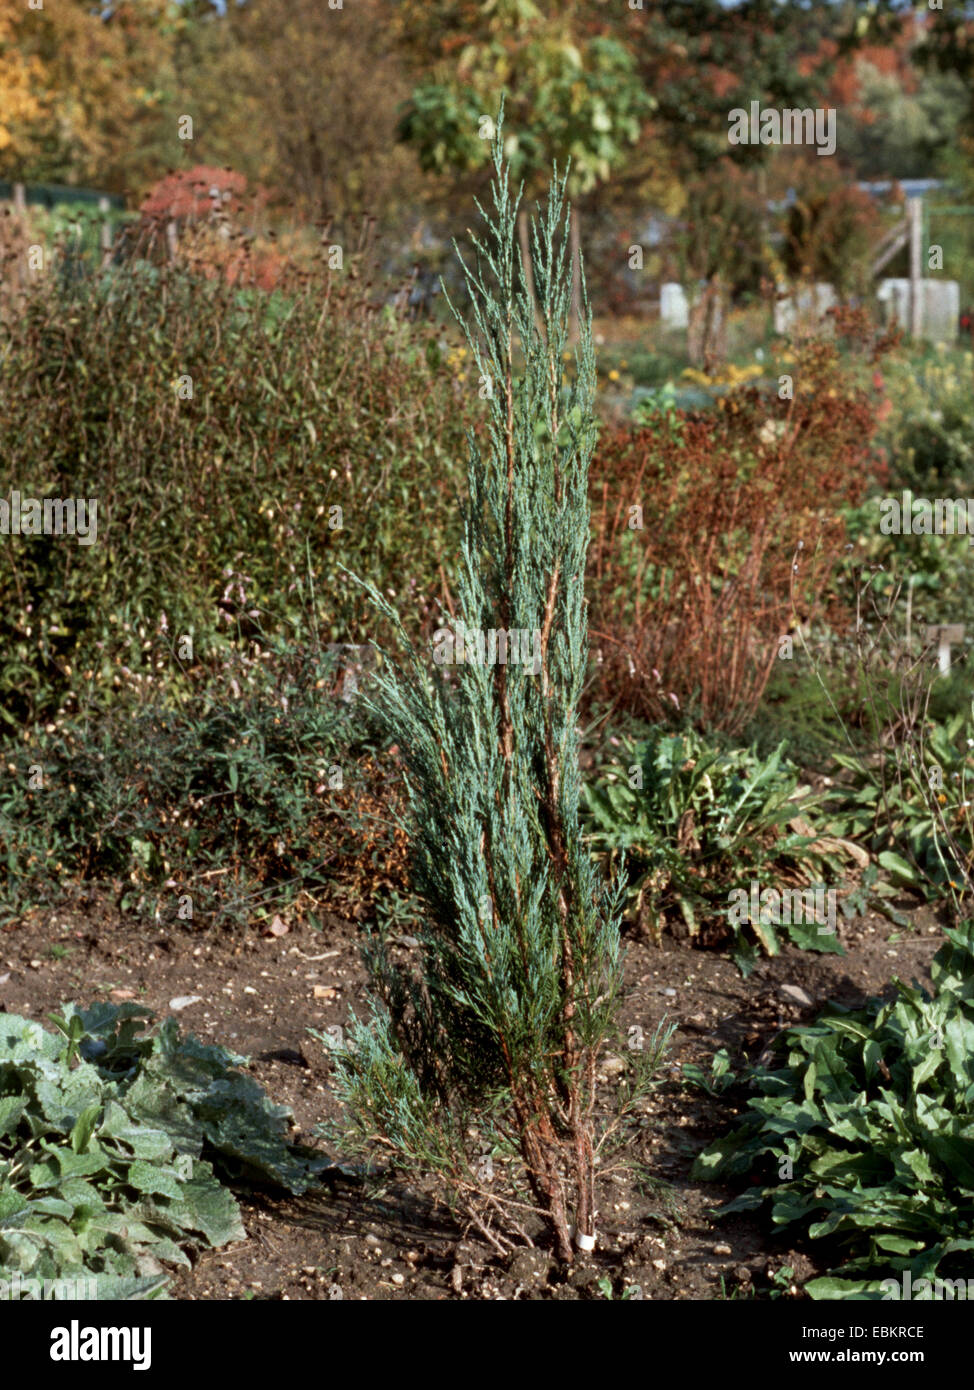 Juniper (Juniperus virginiana 'Skyrocket', Juniperus virginiana Skyrocket, Juniperus scopulorum 'Skyrocket', Juniperus scopulorum Skyrocket), cultivar Skyrocket Stock Photo